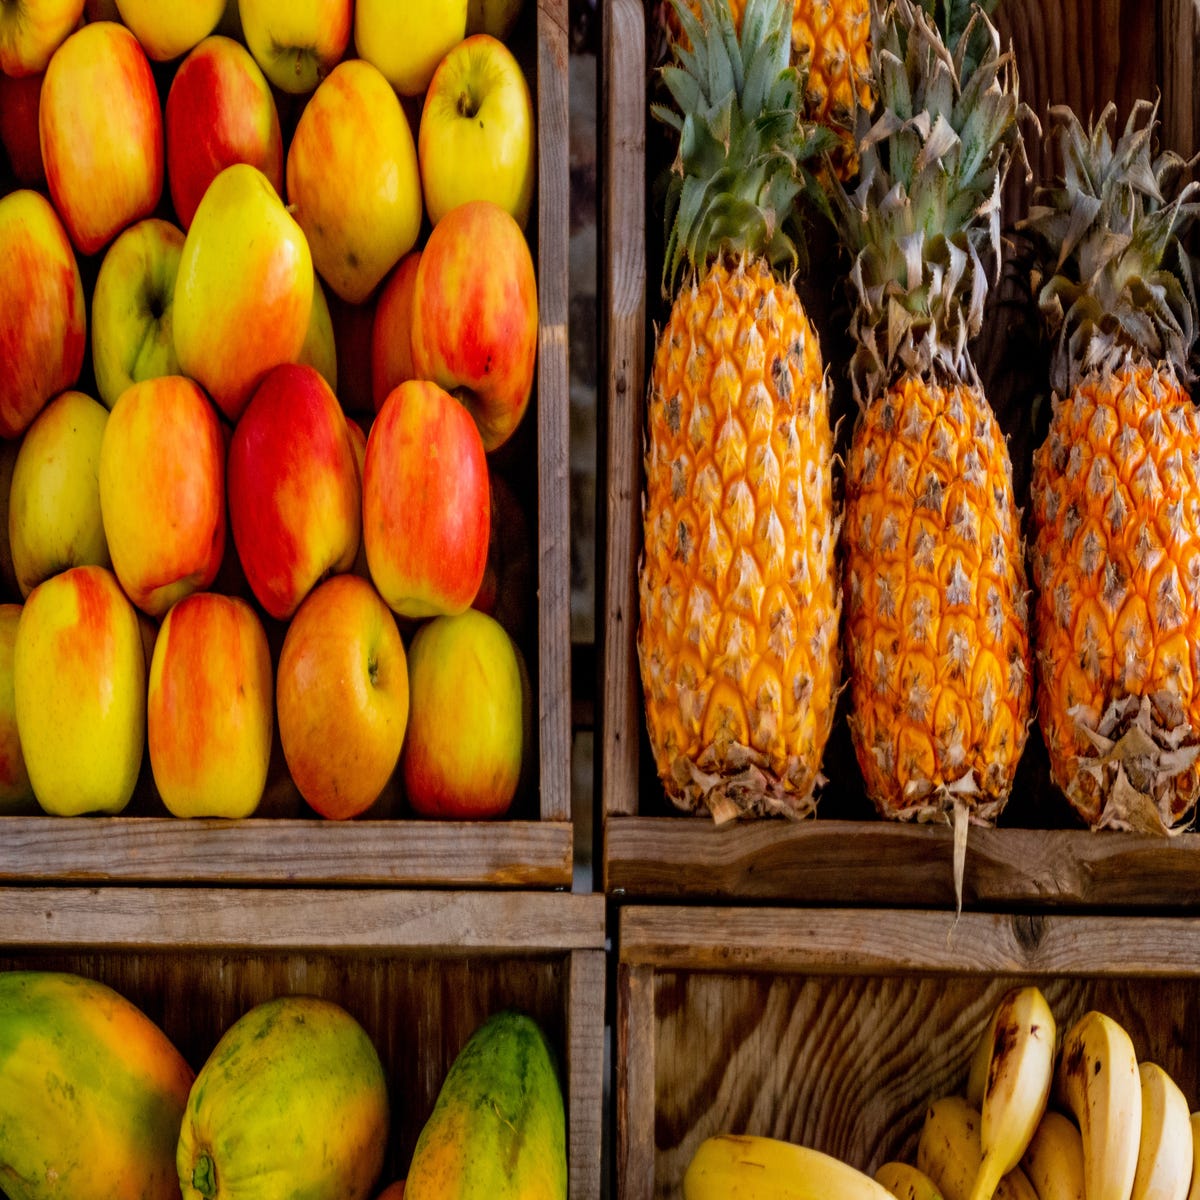 6 frutas que você talvez não saiba como dizer em inglês - English in Brazil